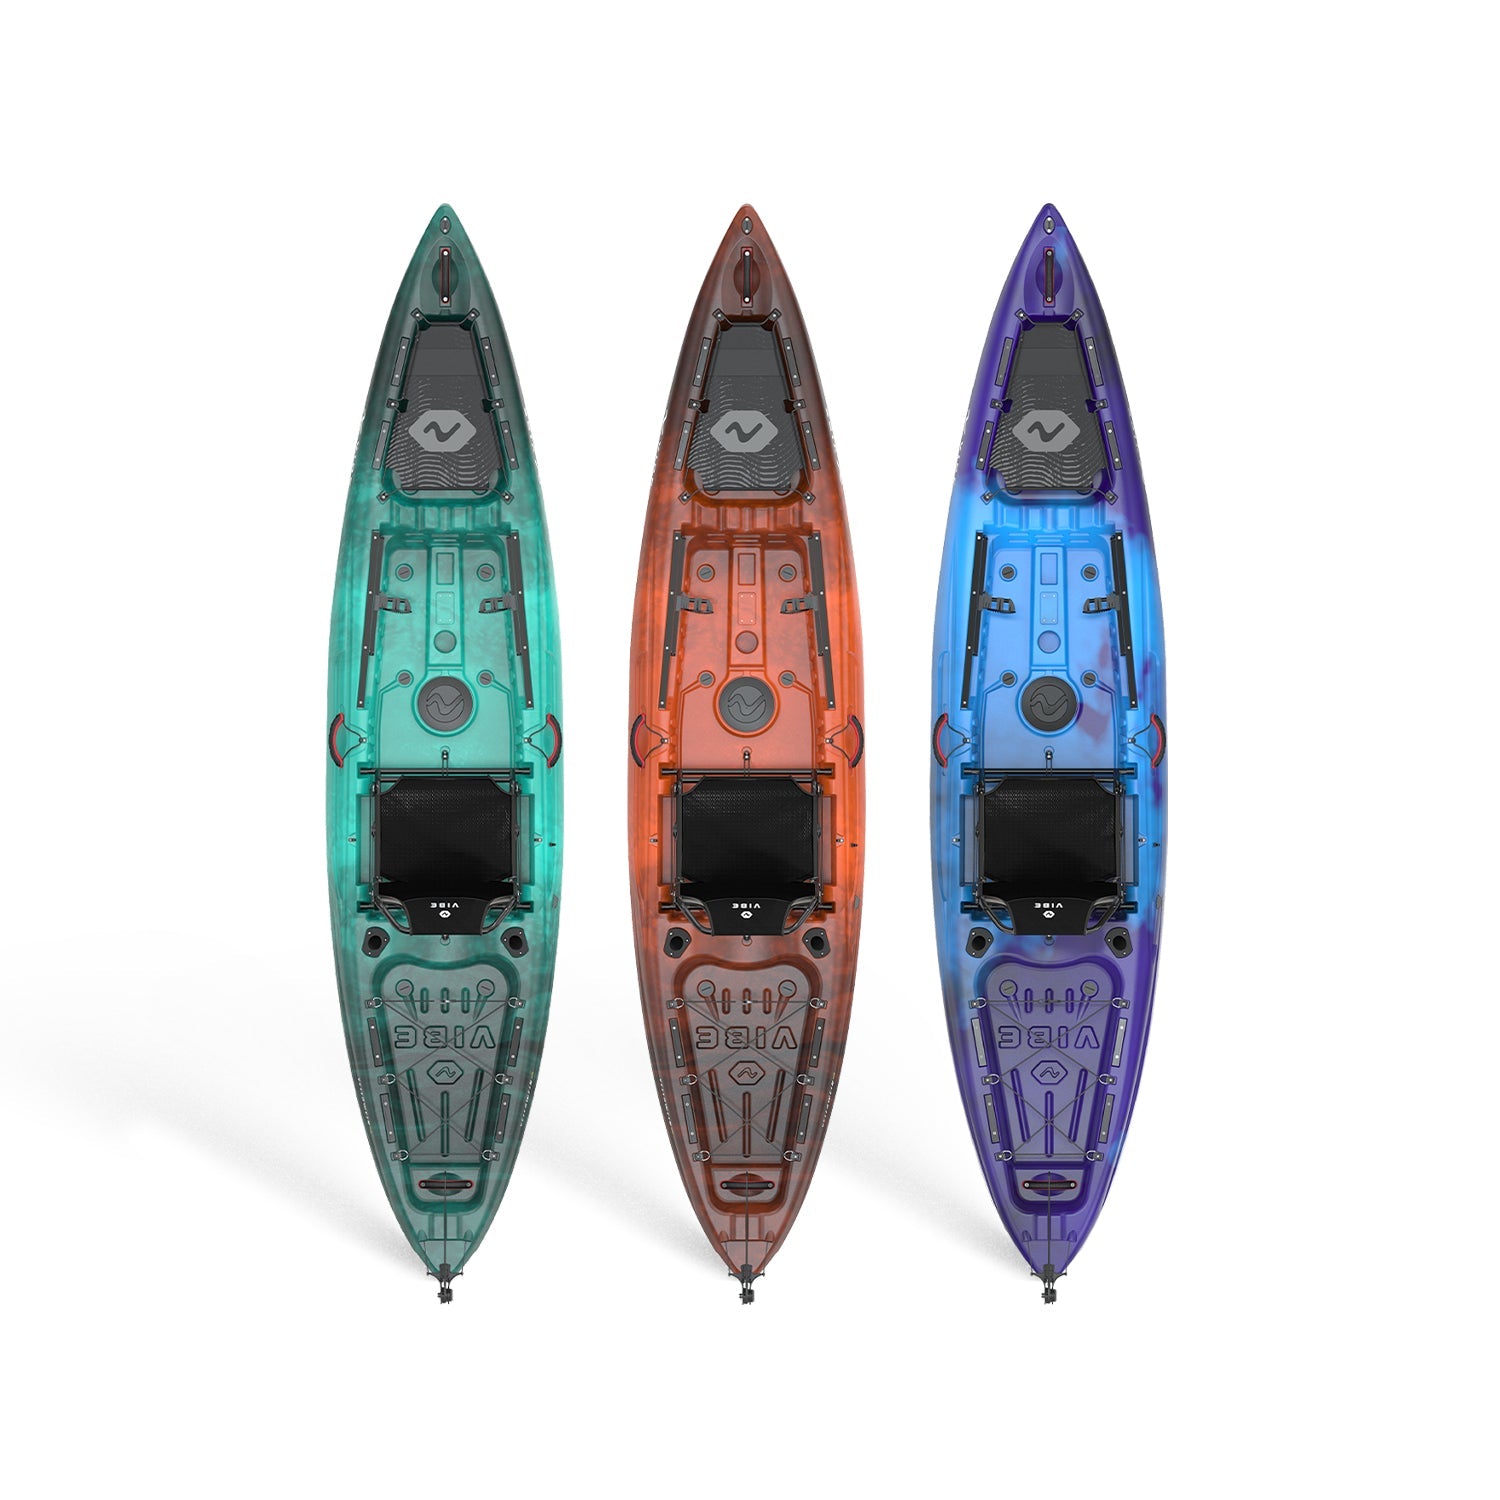 Fishing Online - Kayak Fishing Gear - Premium Fishing Tackle